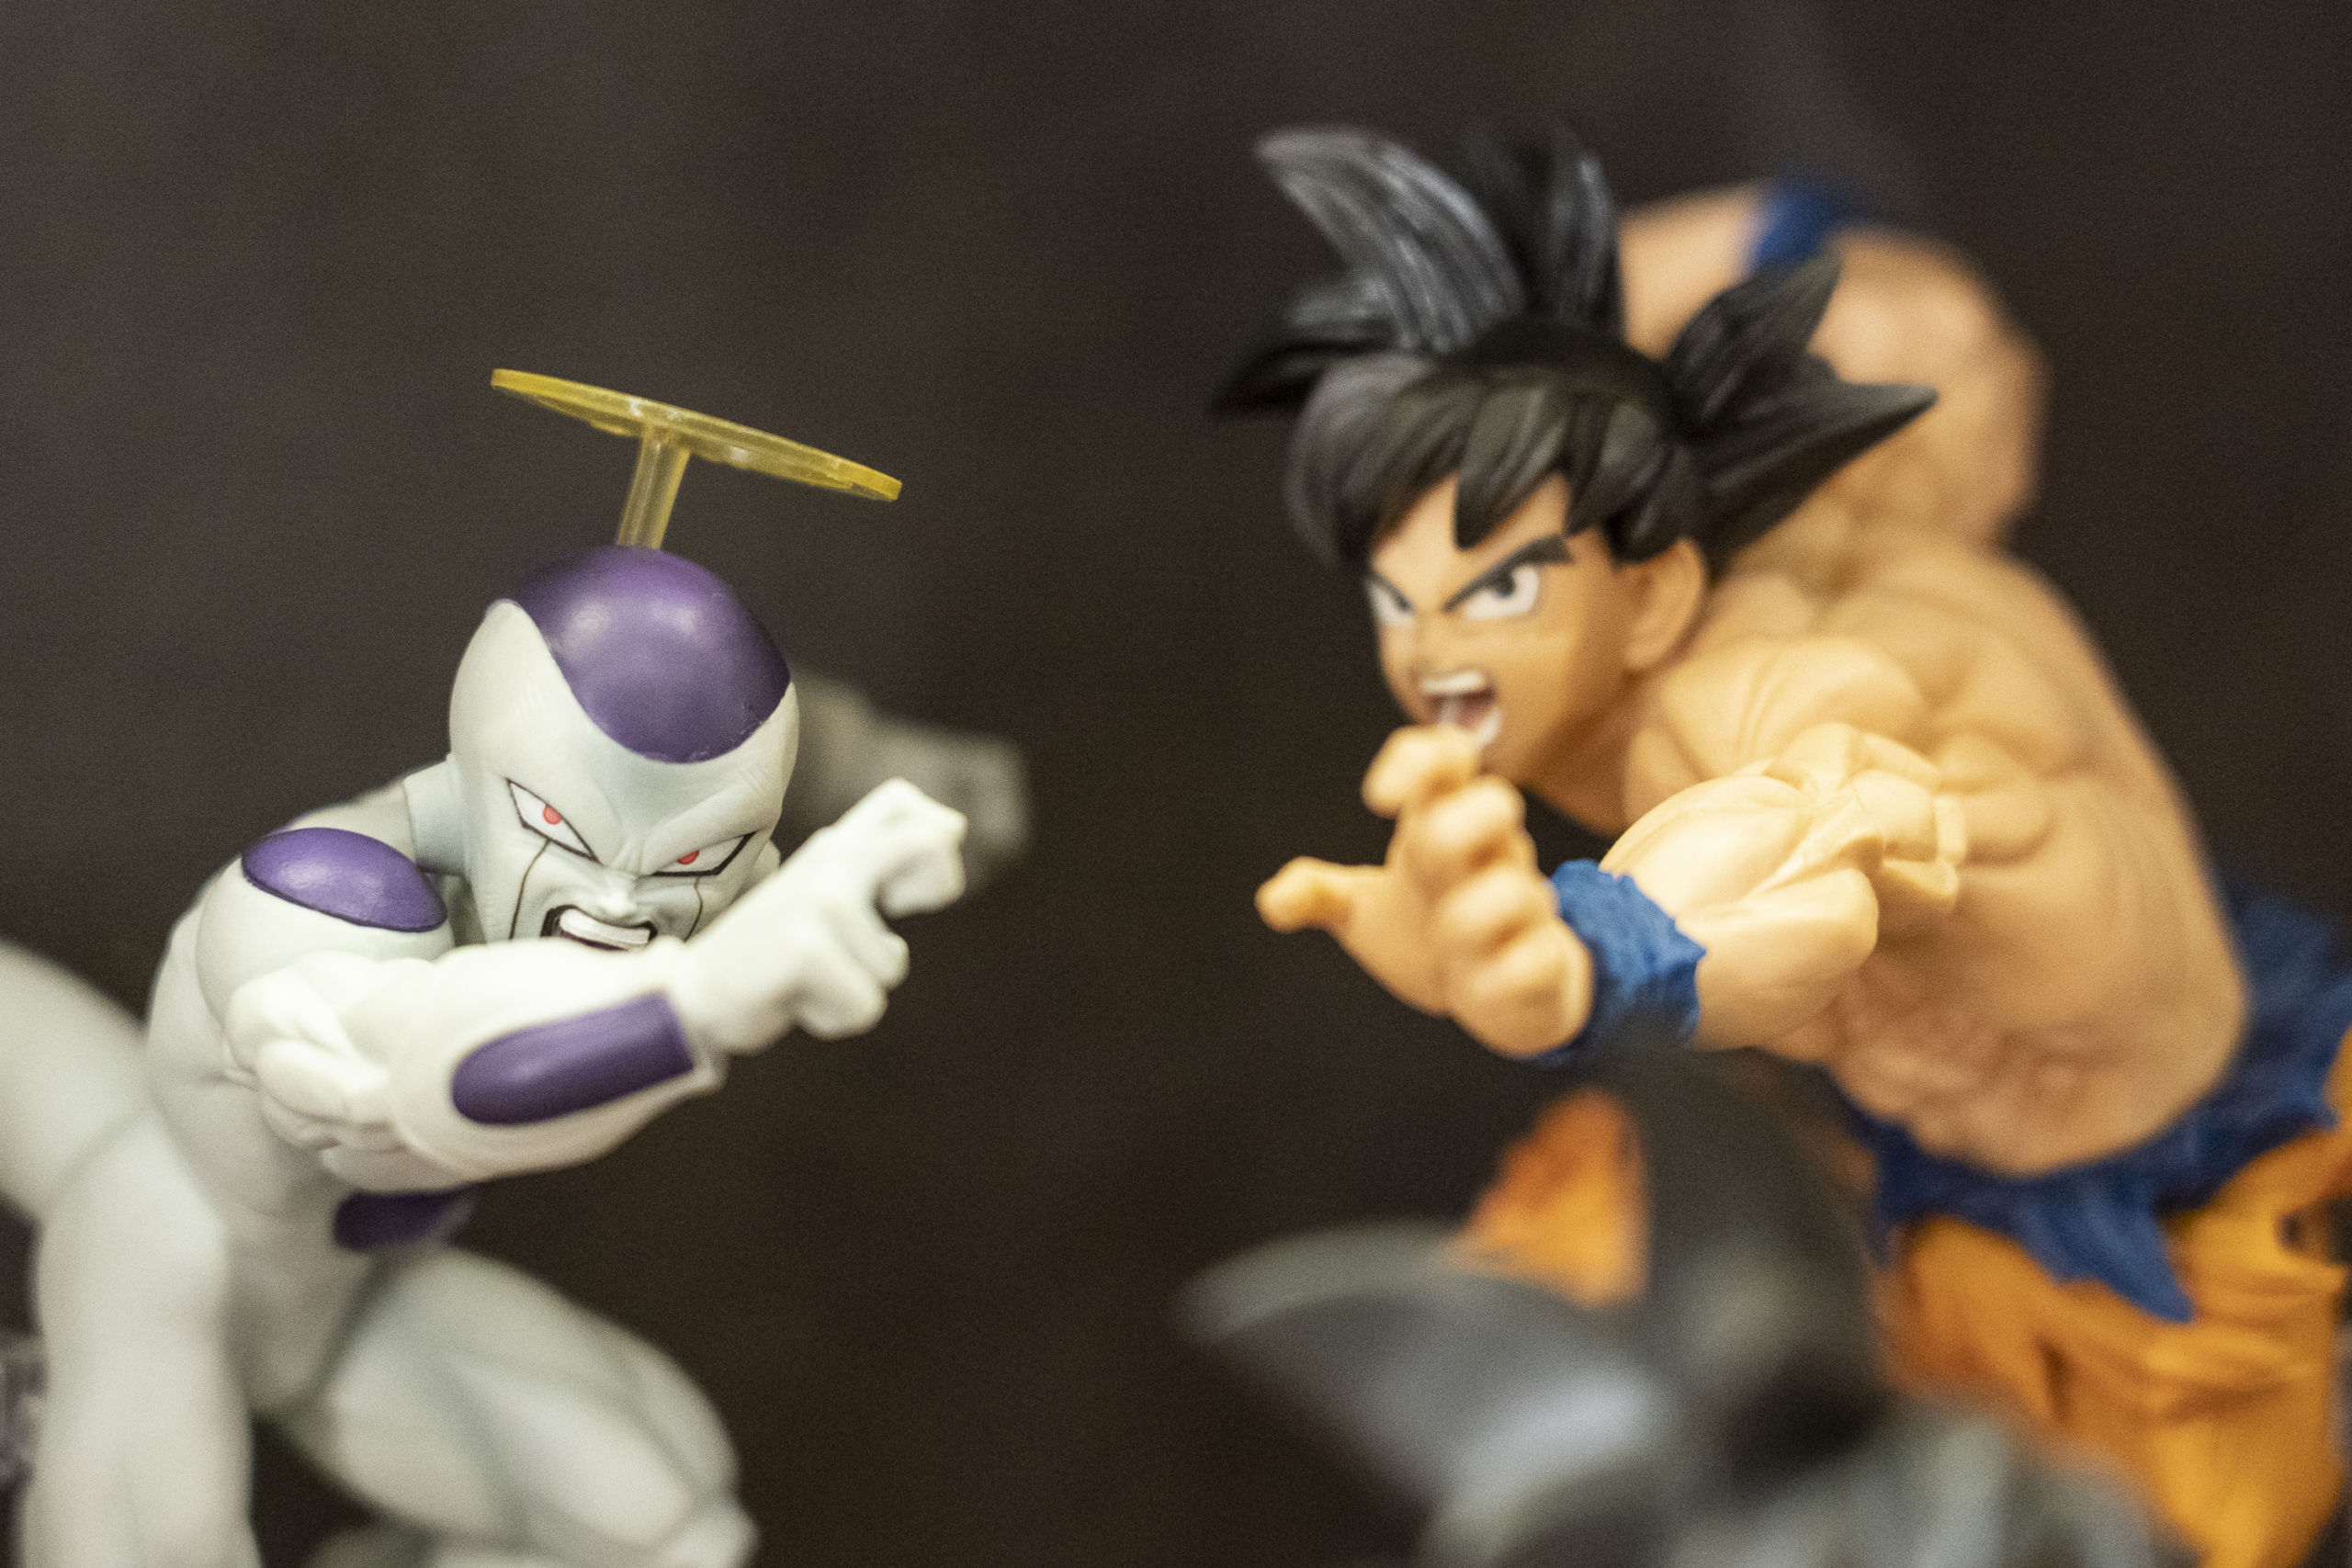 Les aventures d'en Son Goku evolucionen cap a lluites interplanetàries amb personatges molt poderosos. Ninots de la botiga de còmics Continuarà, a Barcelona / Mireia Comas